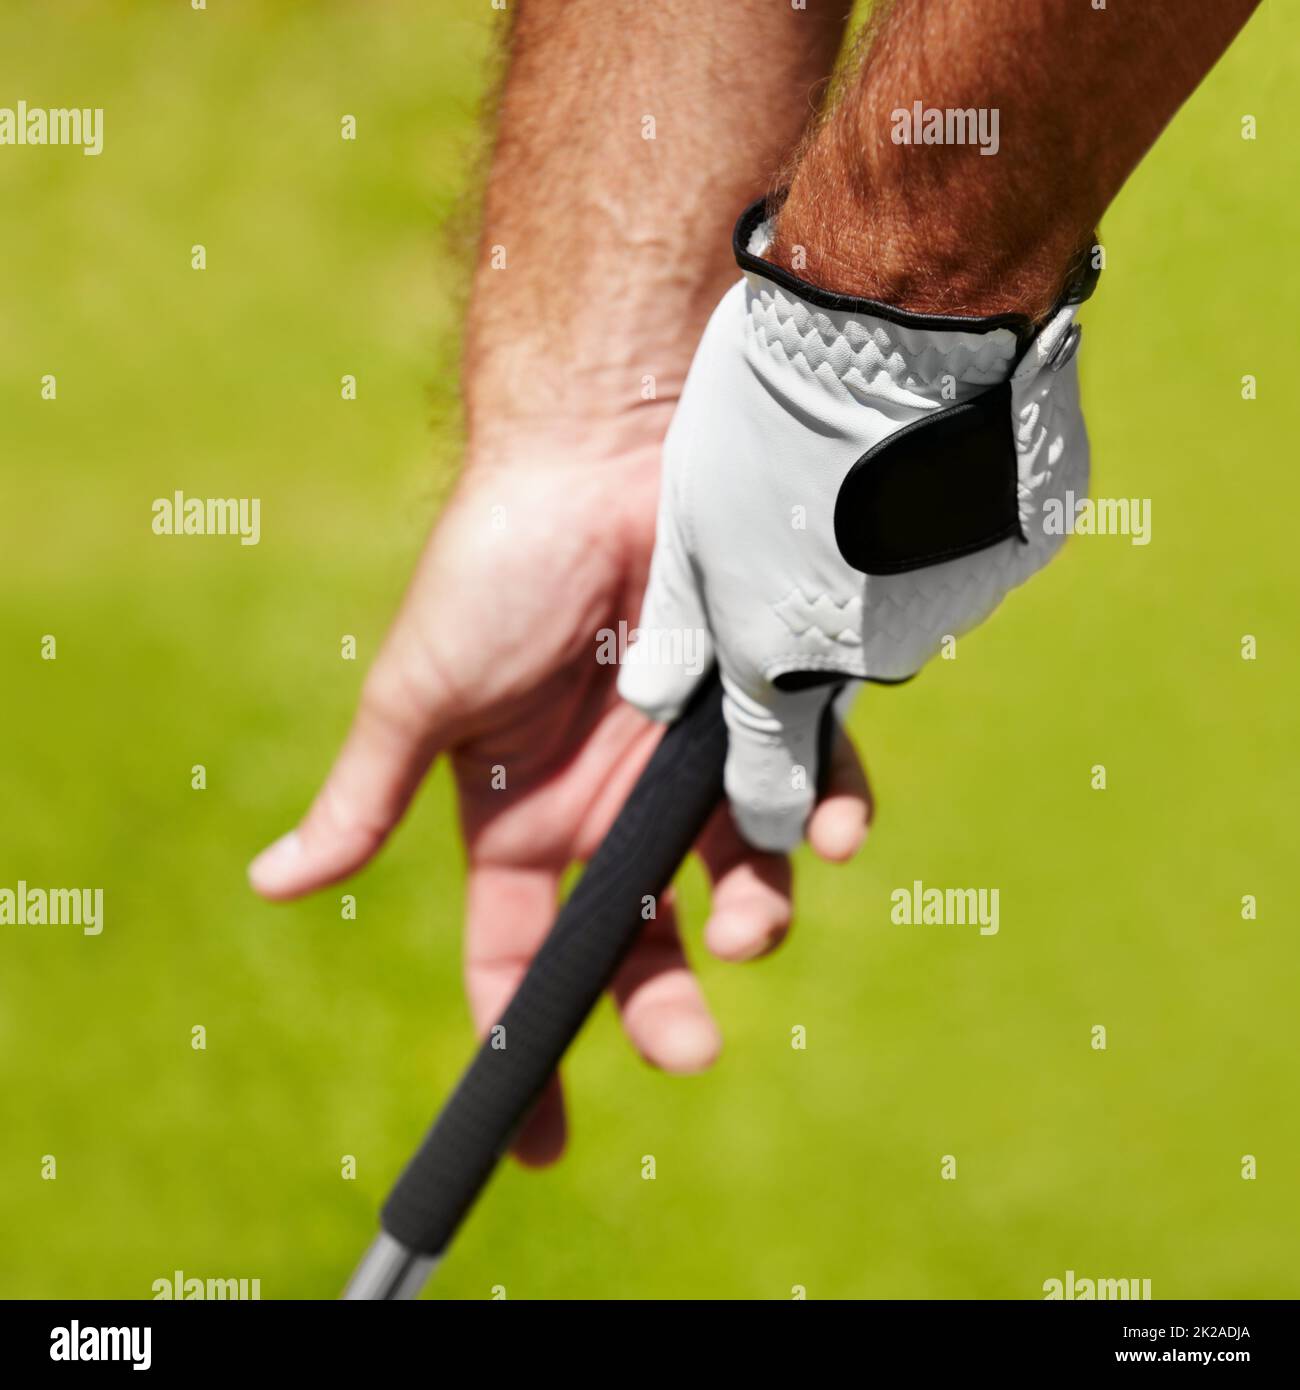 Der richtige Halt ist wichtig. Zugeschnittenes Bild eines Golfers, der den richtigen Griff zeigt. Stockfoto